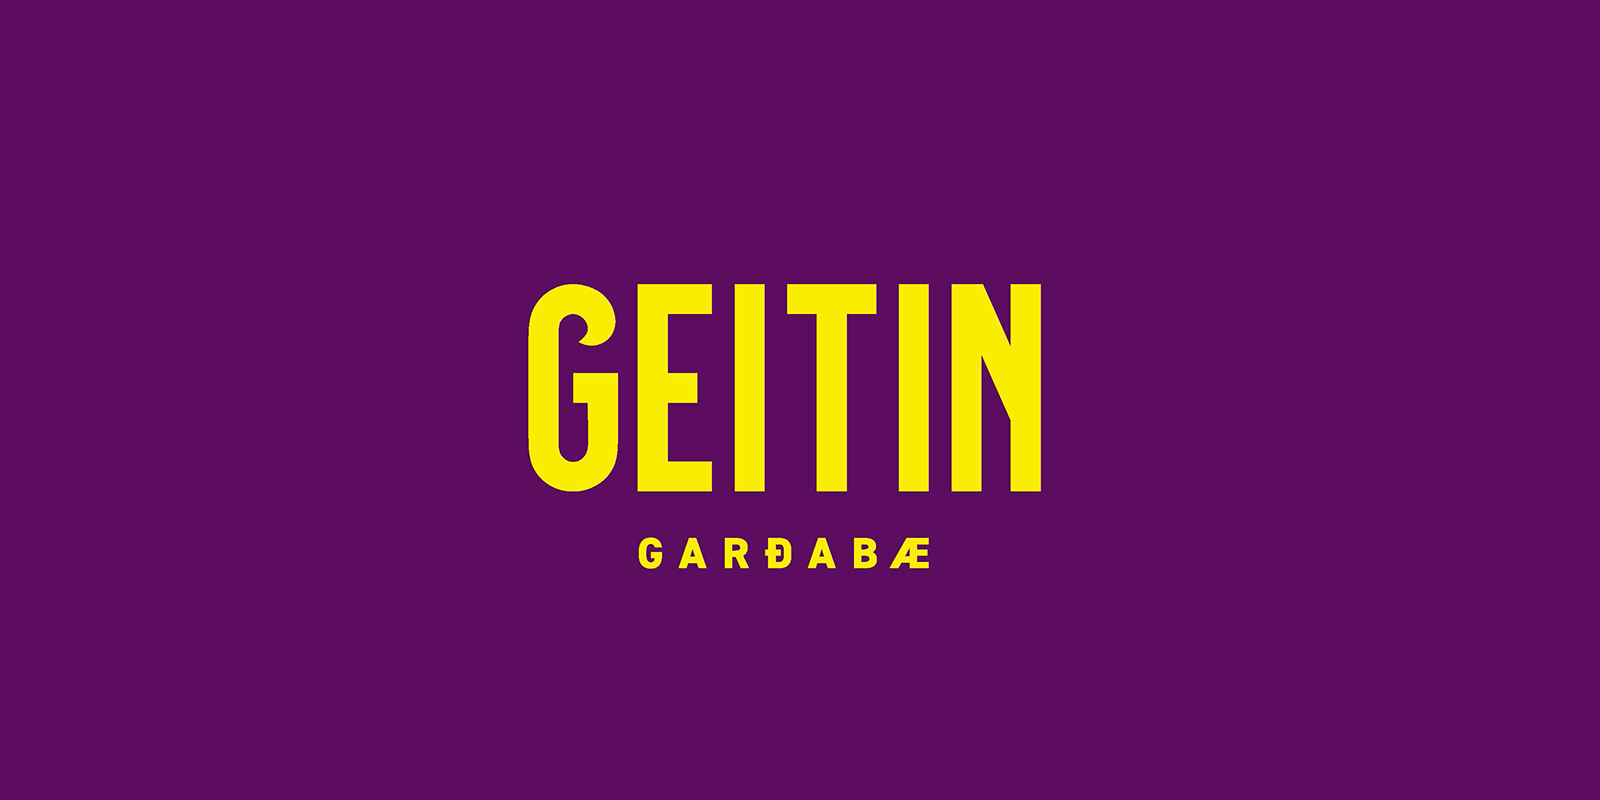 Geitin Garðabæ logo